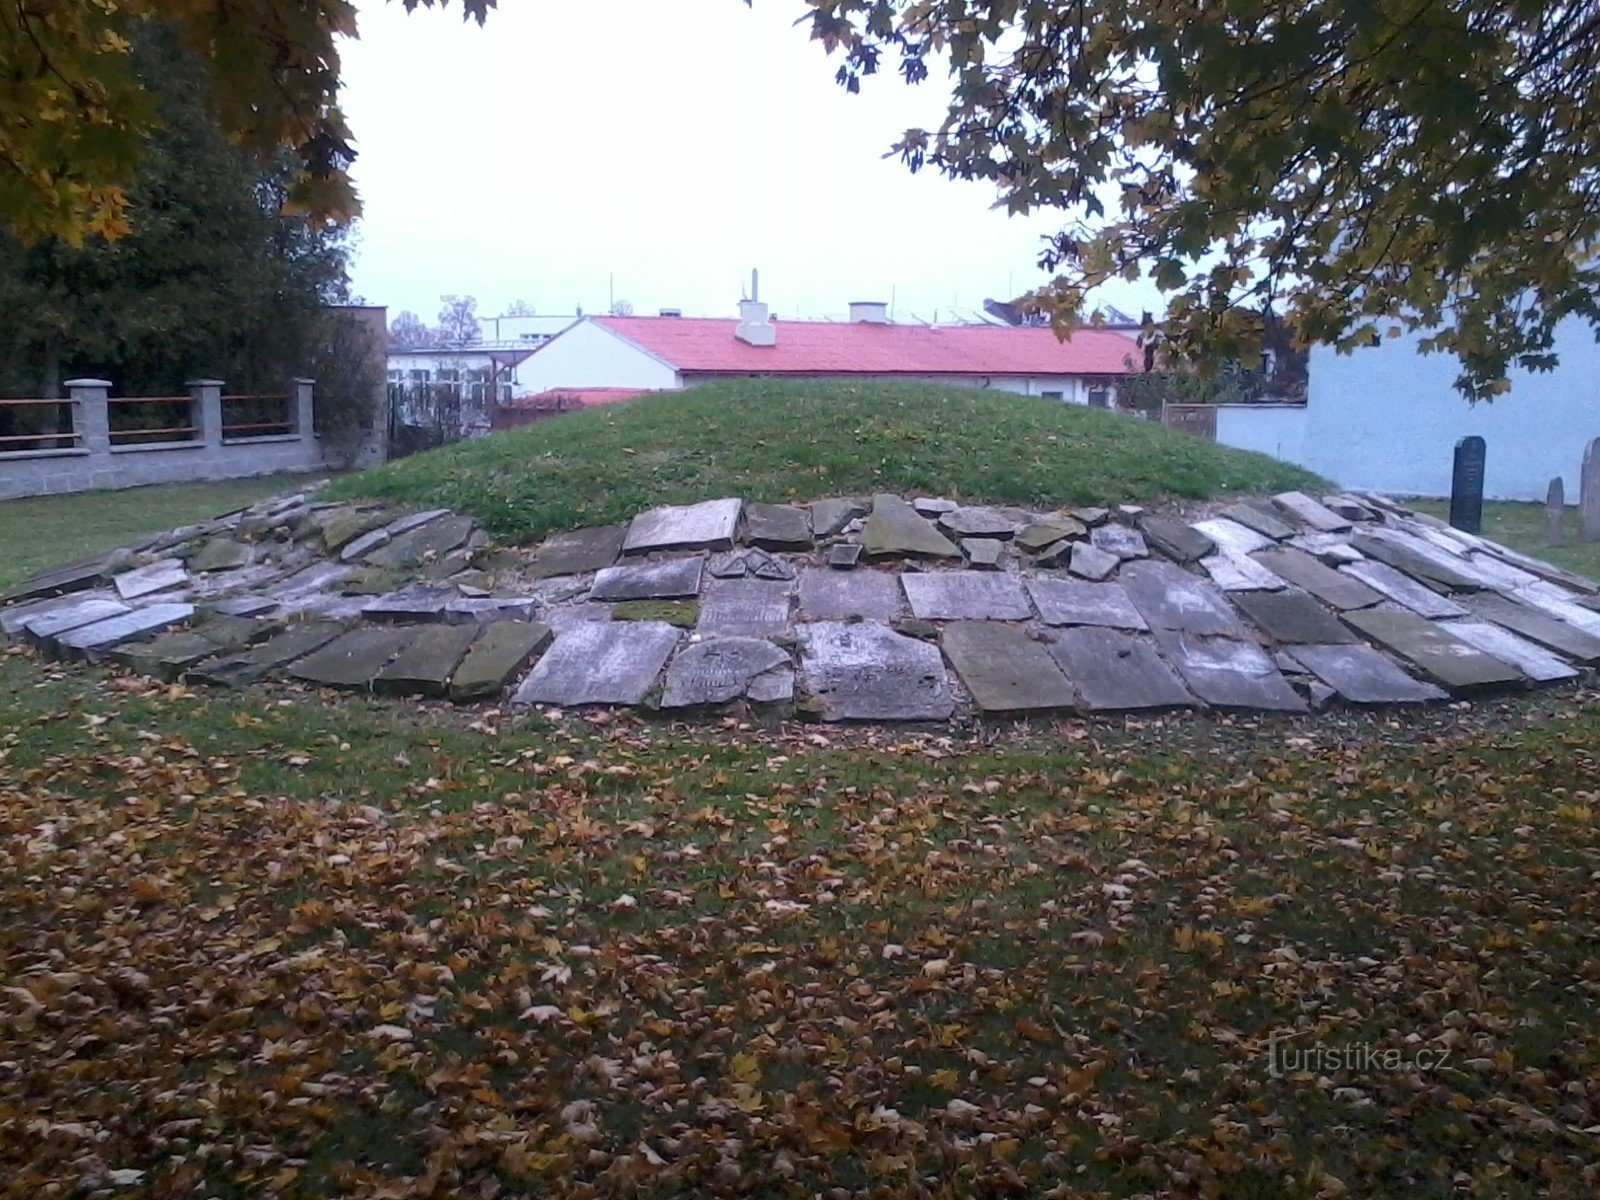 Hlúčín - ex cimitero ebraico